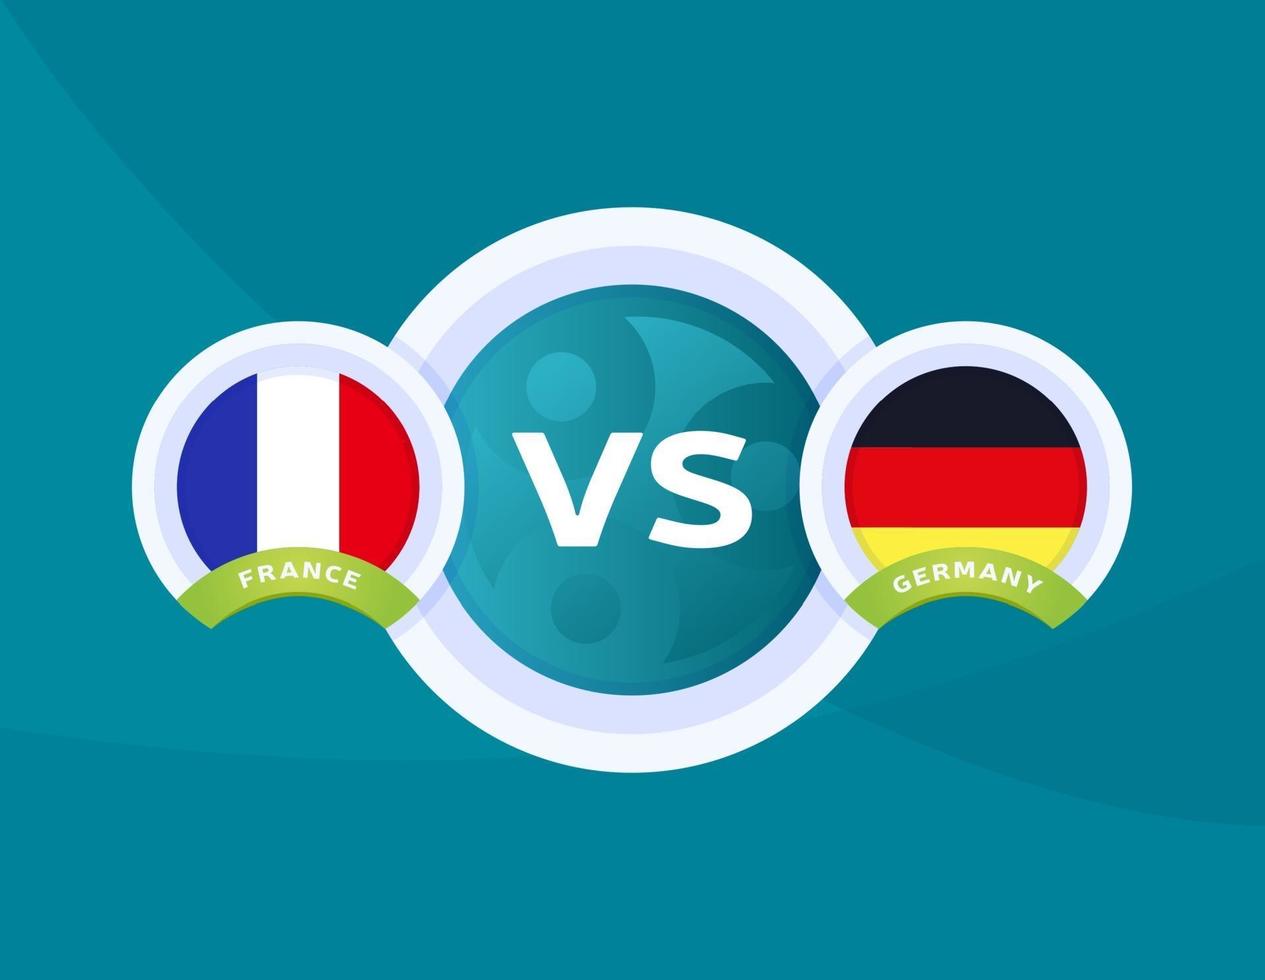 Frankrijk vs Duitsland voetbal vector